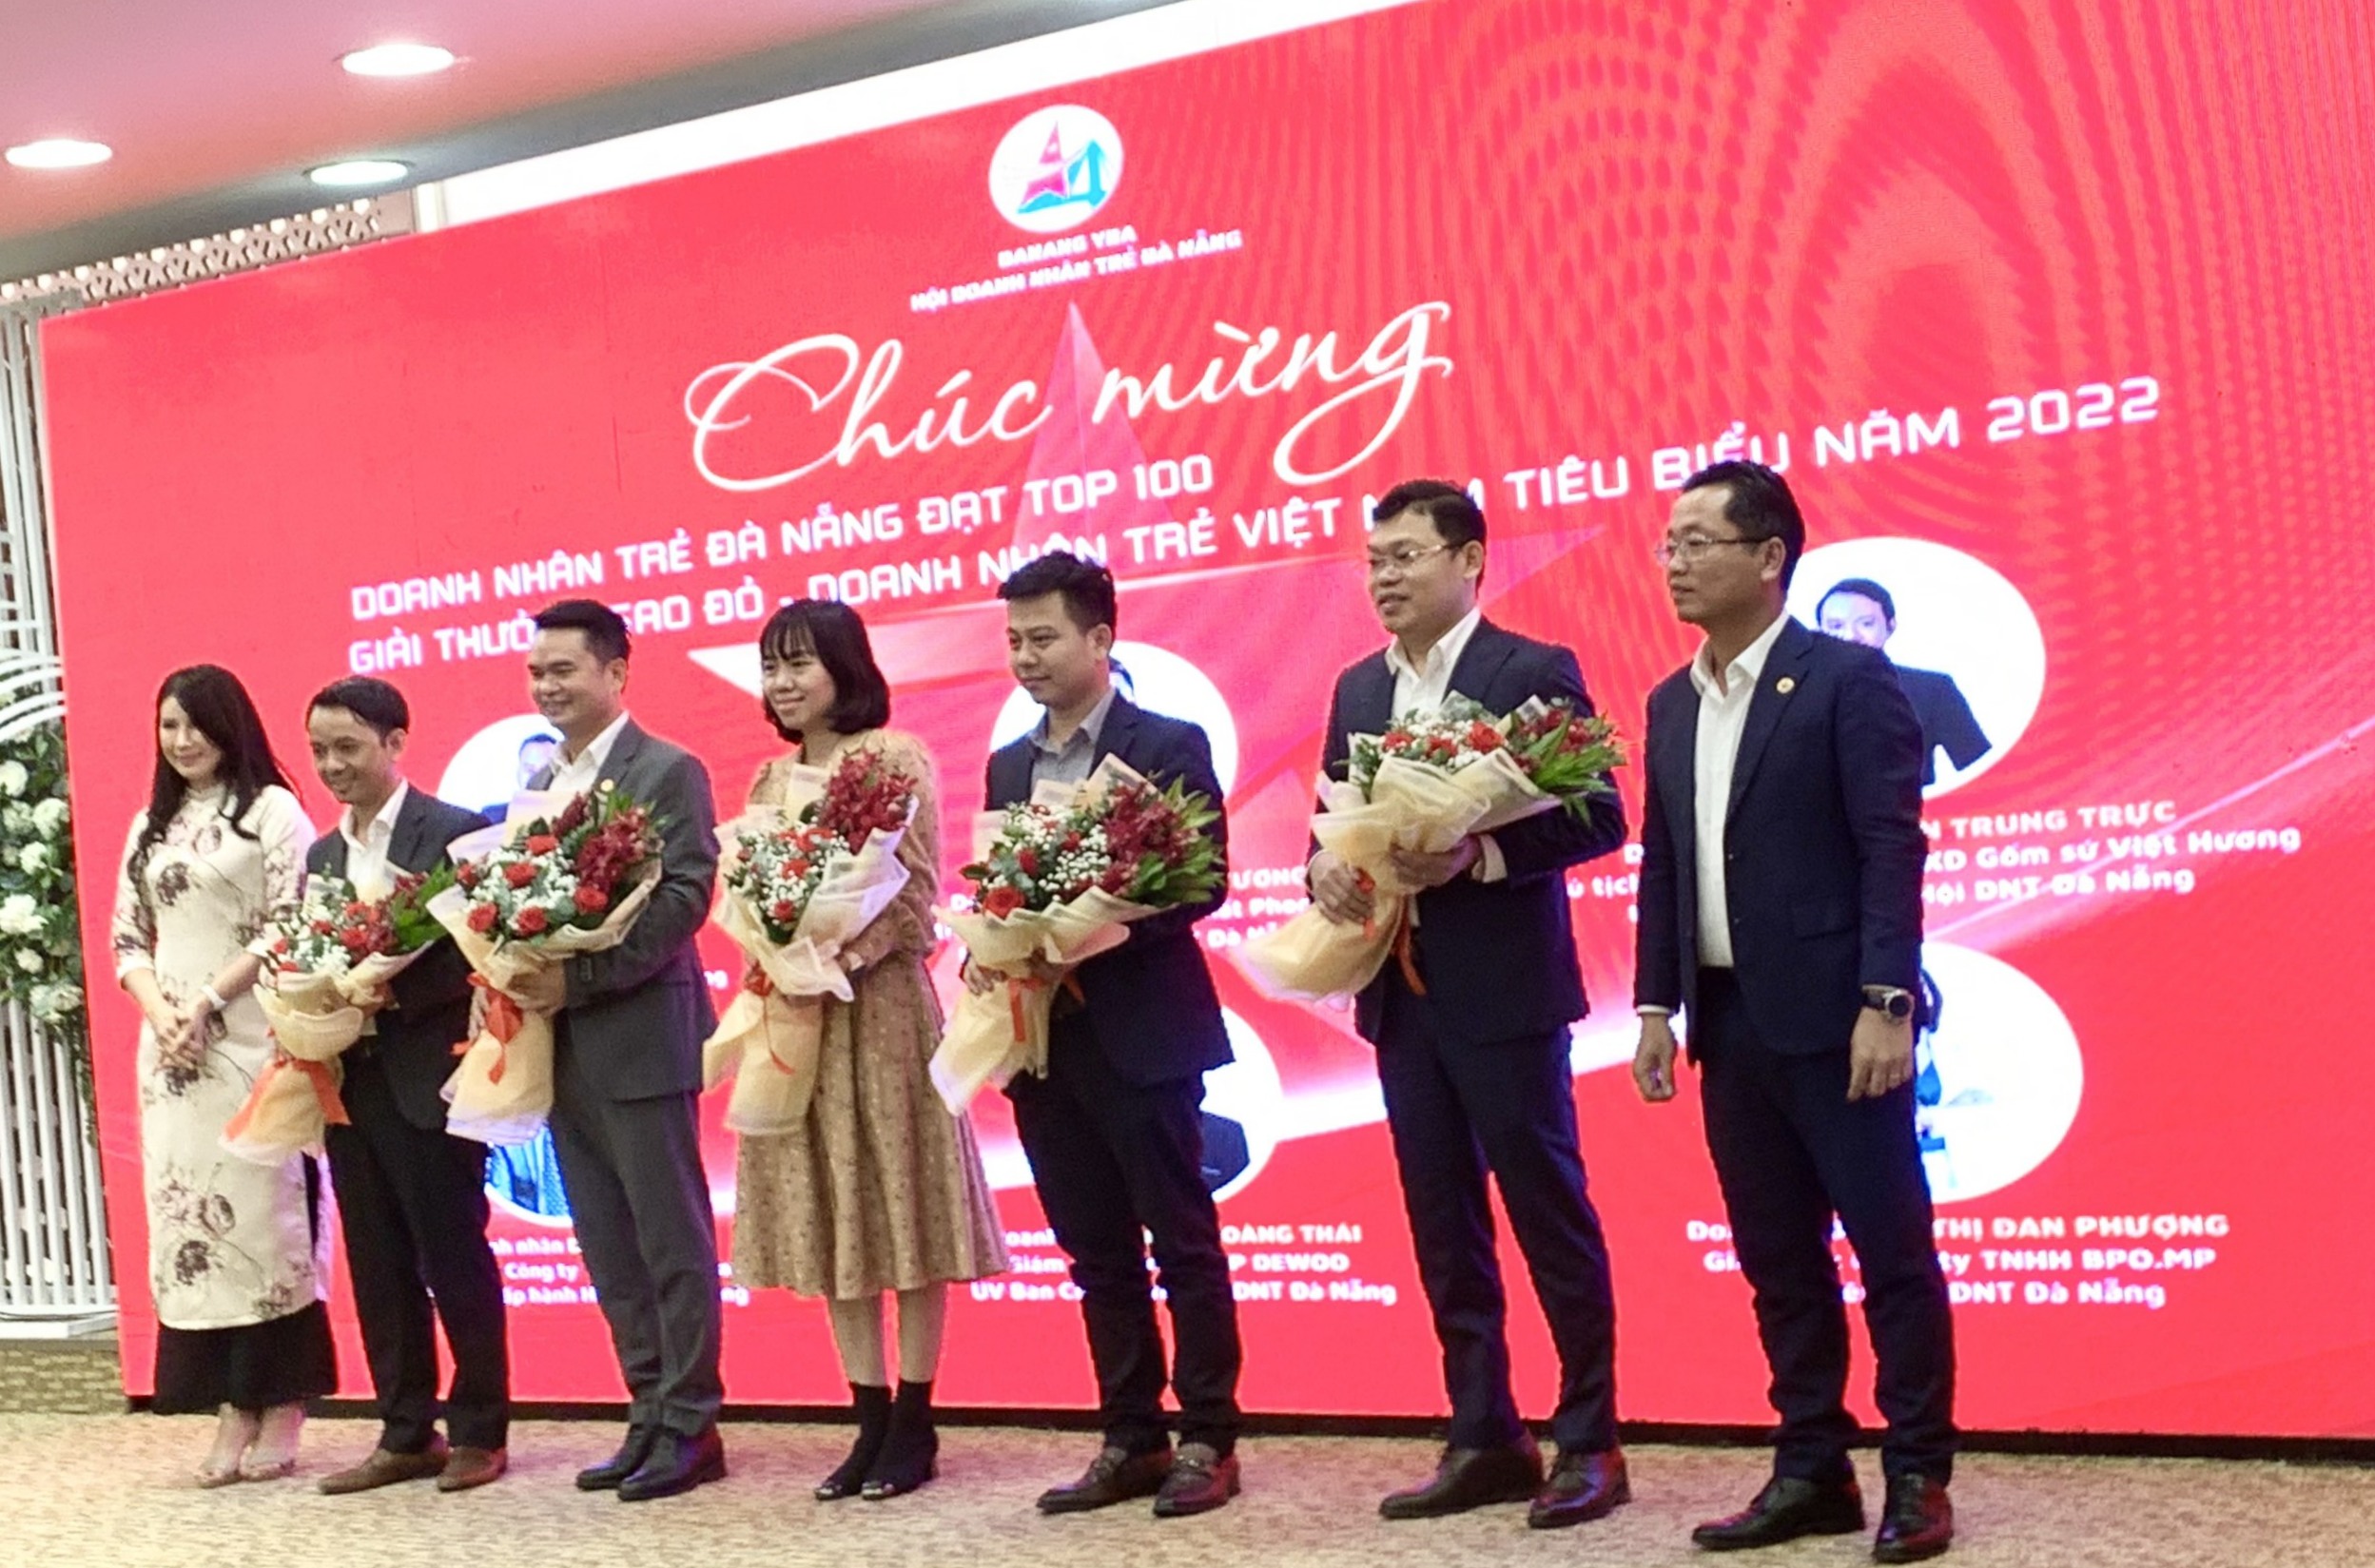 chúc mừng các hội viên đạt top 100 giải thưởng Sao đỏ - doanh nhân trẻ Việt Nam tiêu biểu năm 2022.